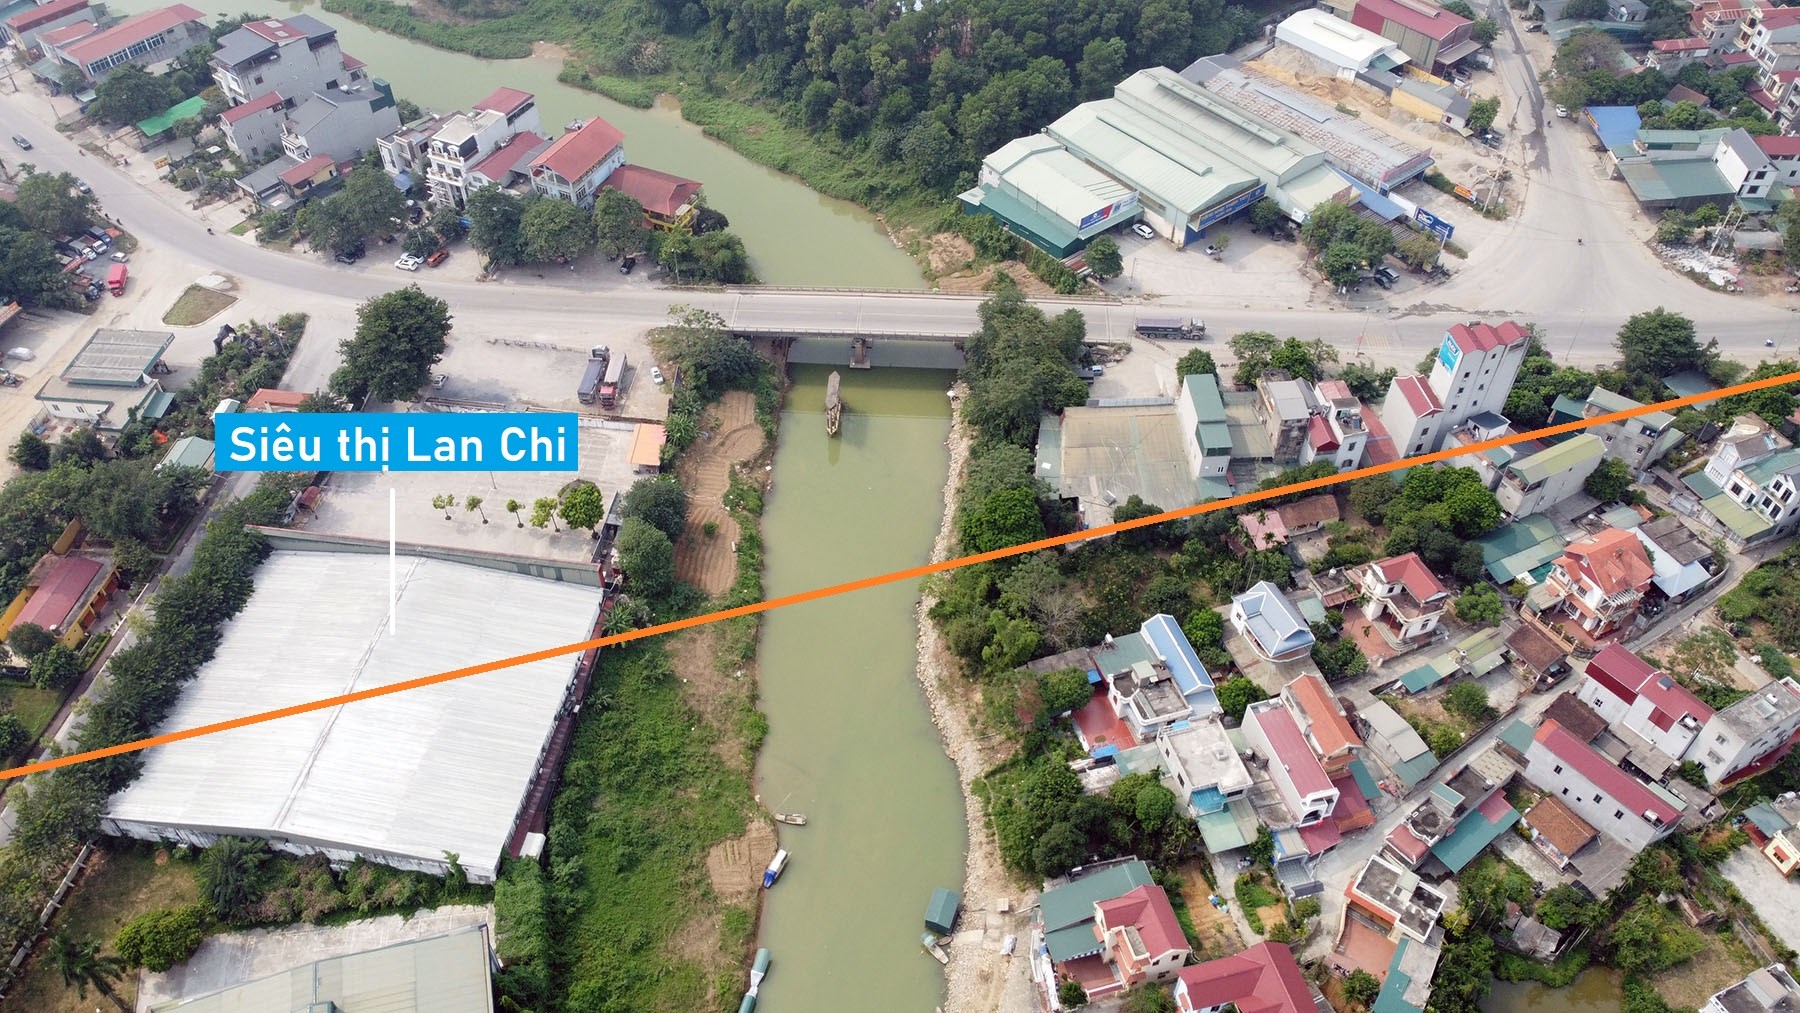 Toàn cảnh vị trí quy hoạch cầu vượt sông Bùi nối TT Xuân Mai với xã Thủy Xuân Tiên, Chương Mỹ, Hà Nội